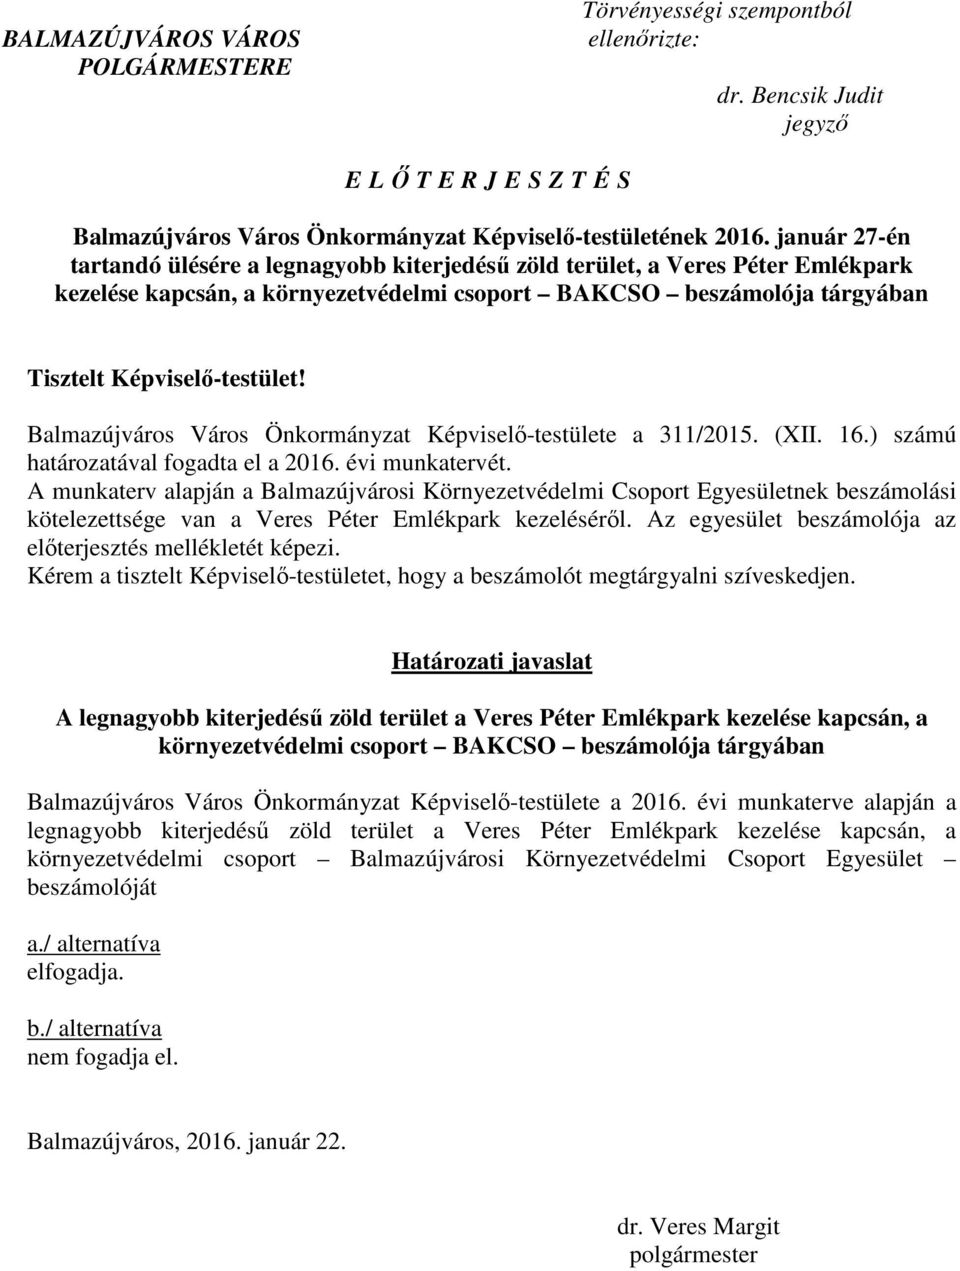 Balmazújváros Város Önkormányzat Képviselő-testülete a 311/2015. (XII. 16.) számú határozatával fogadta el a 2016. évi munkatervét.